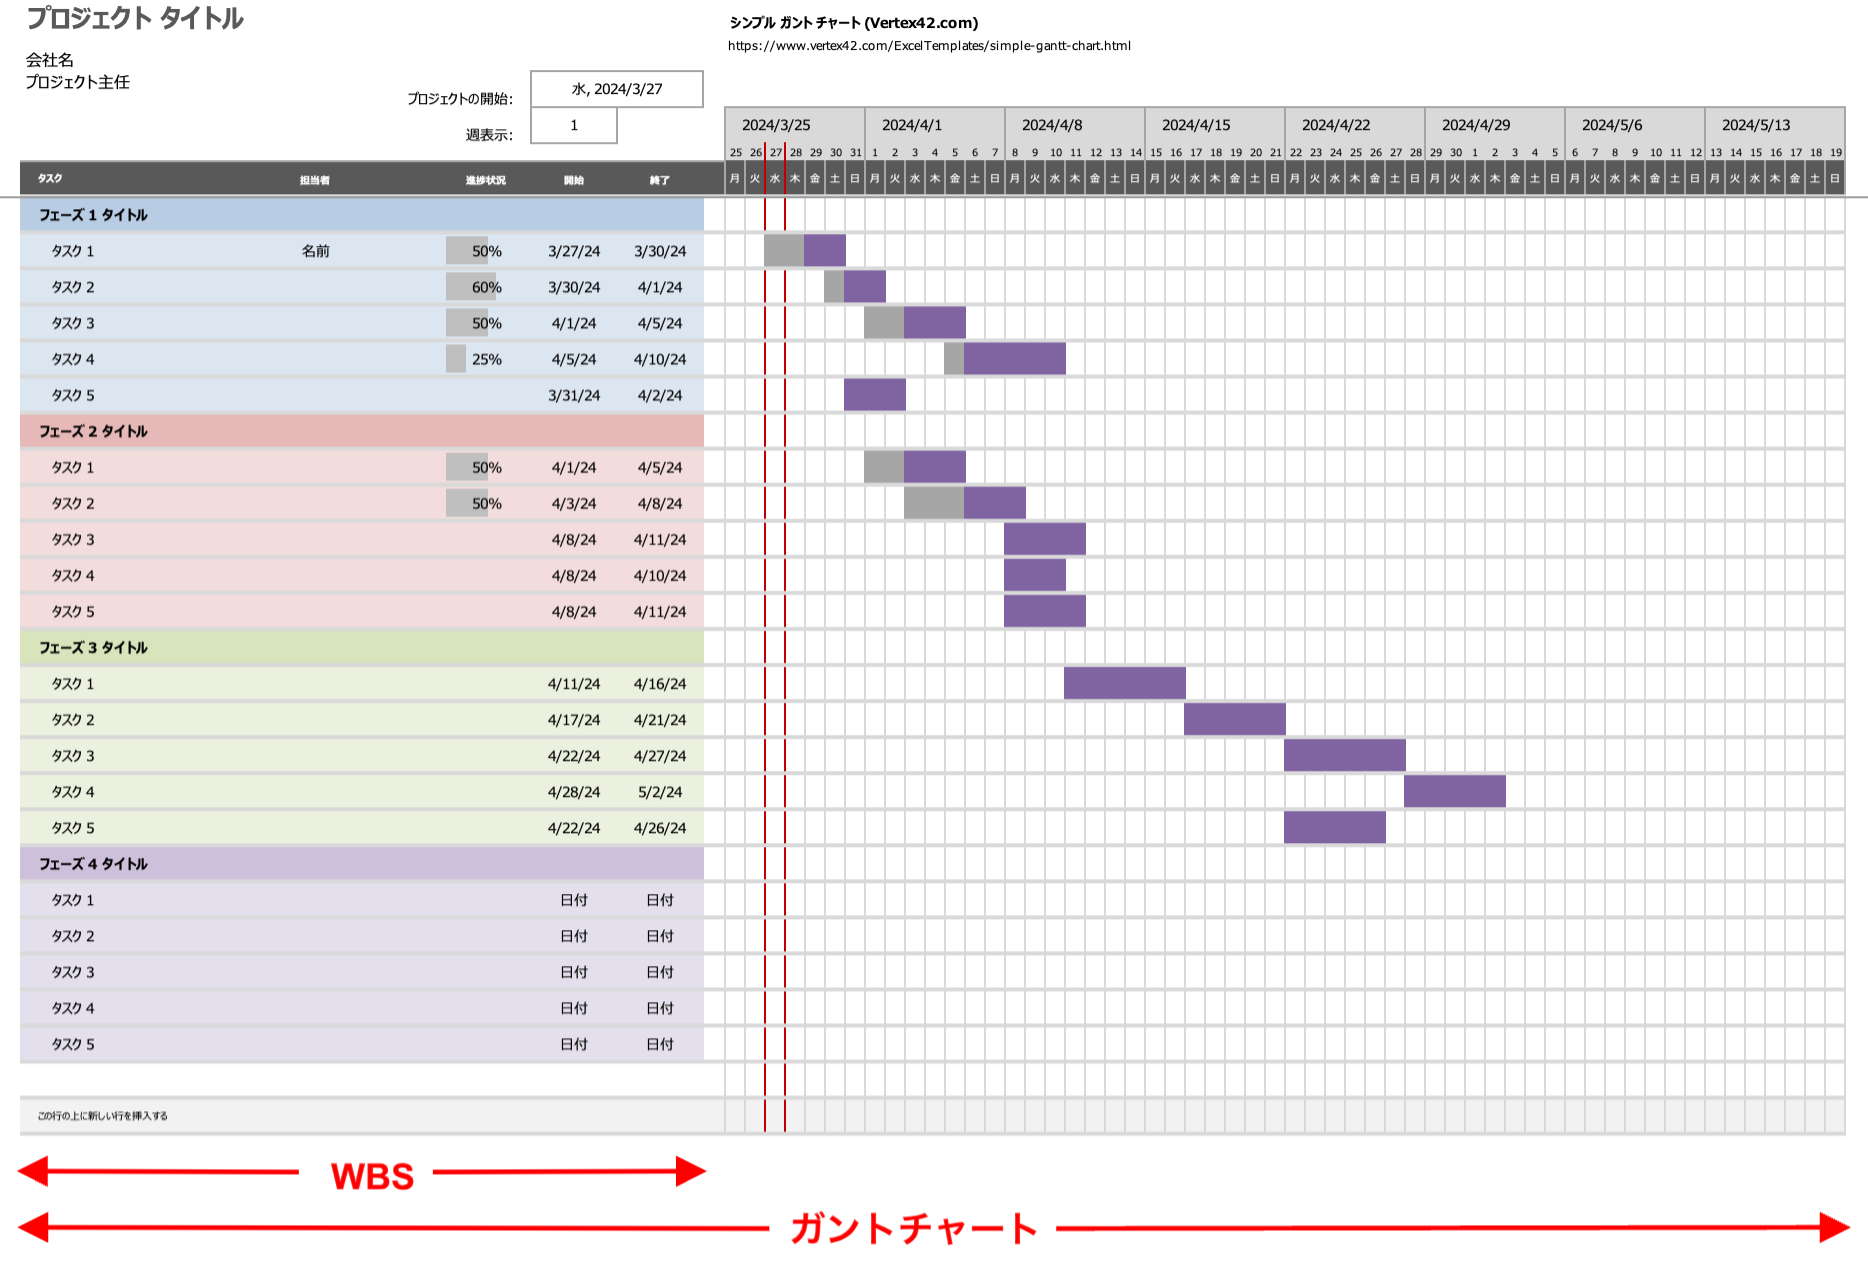 WBSとガントチャートの違いを示した図